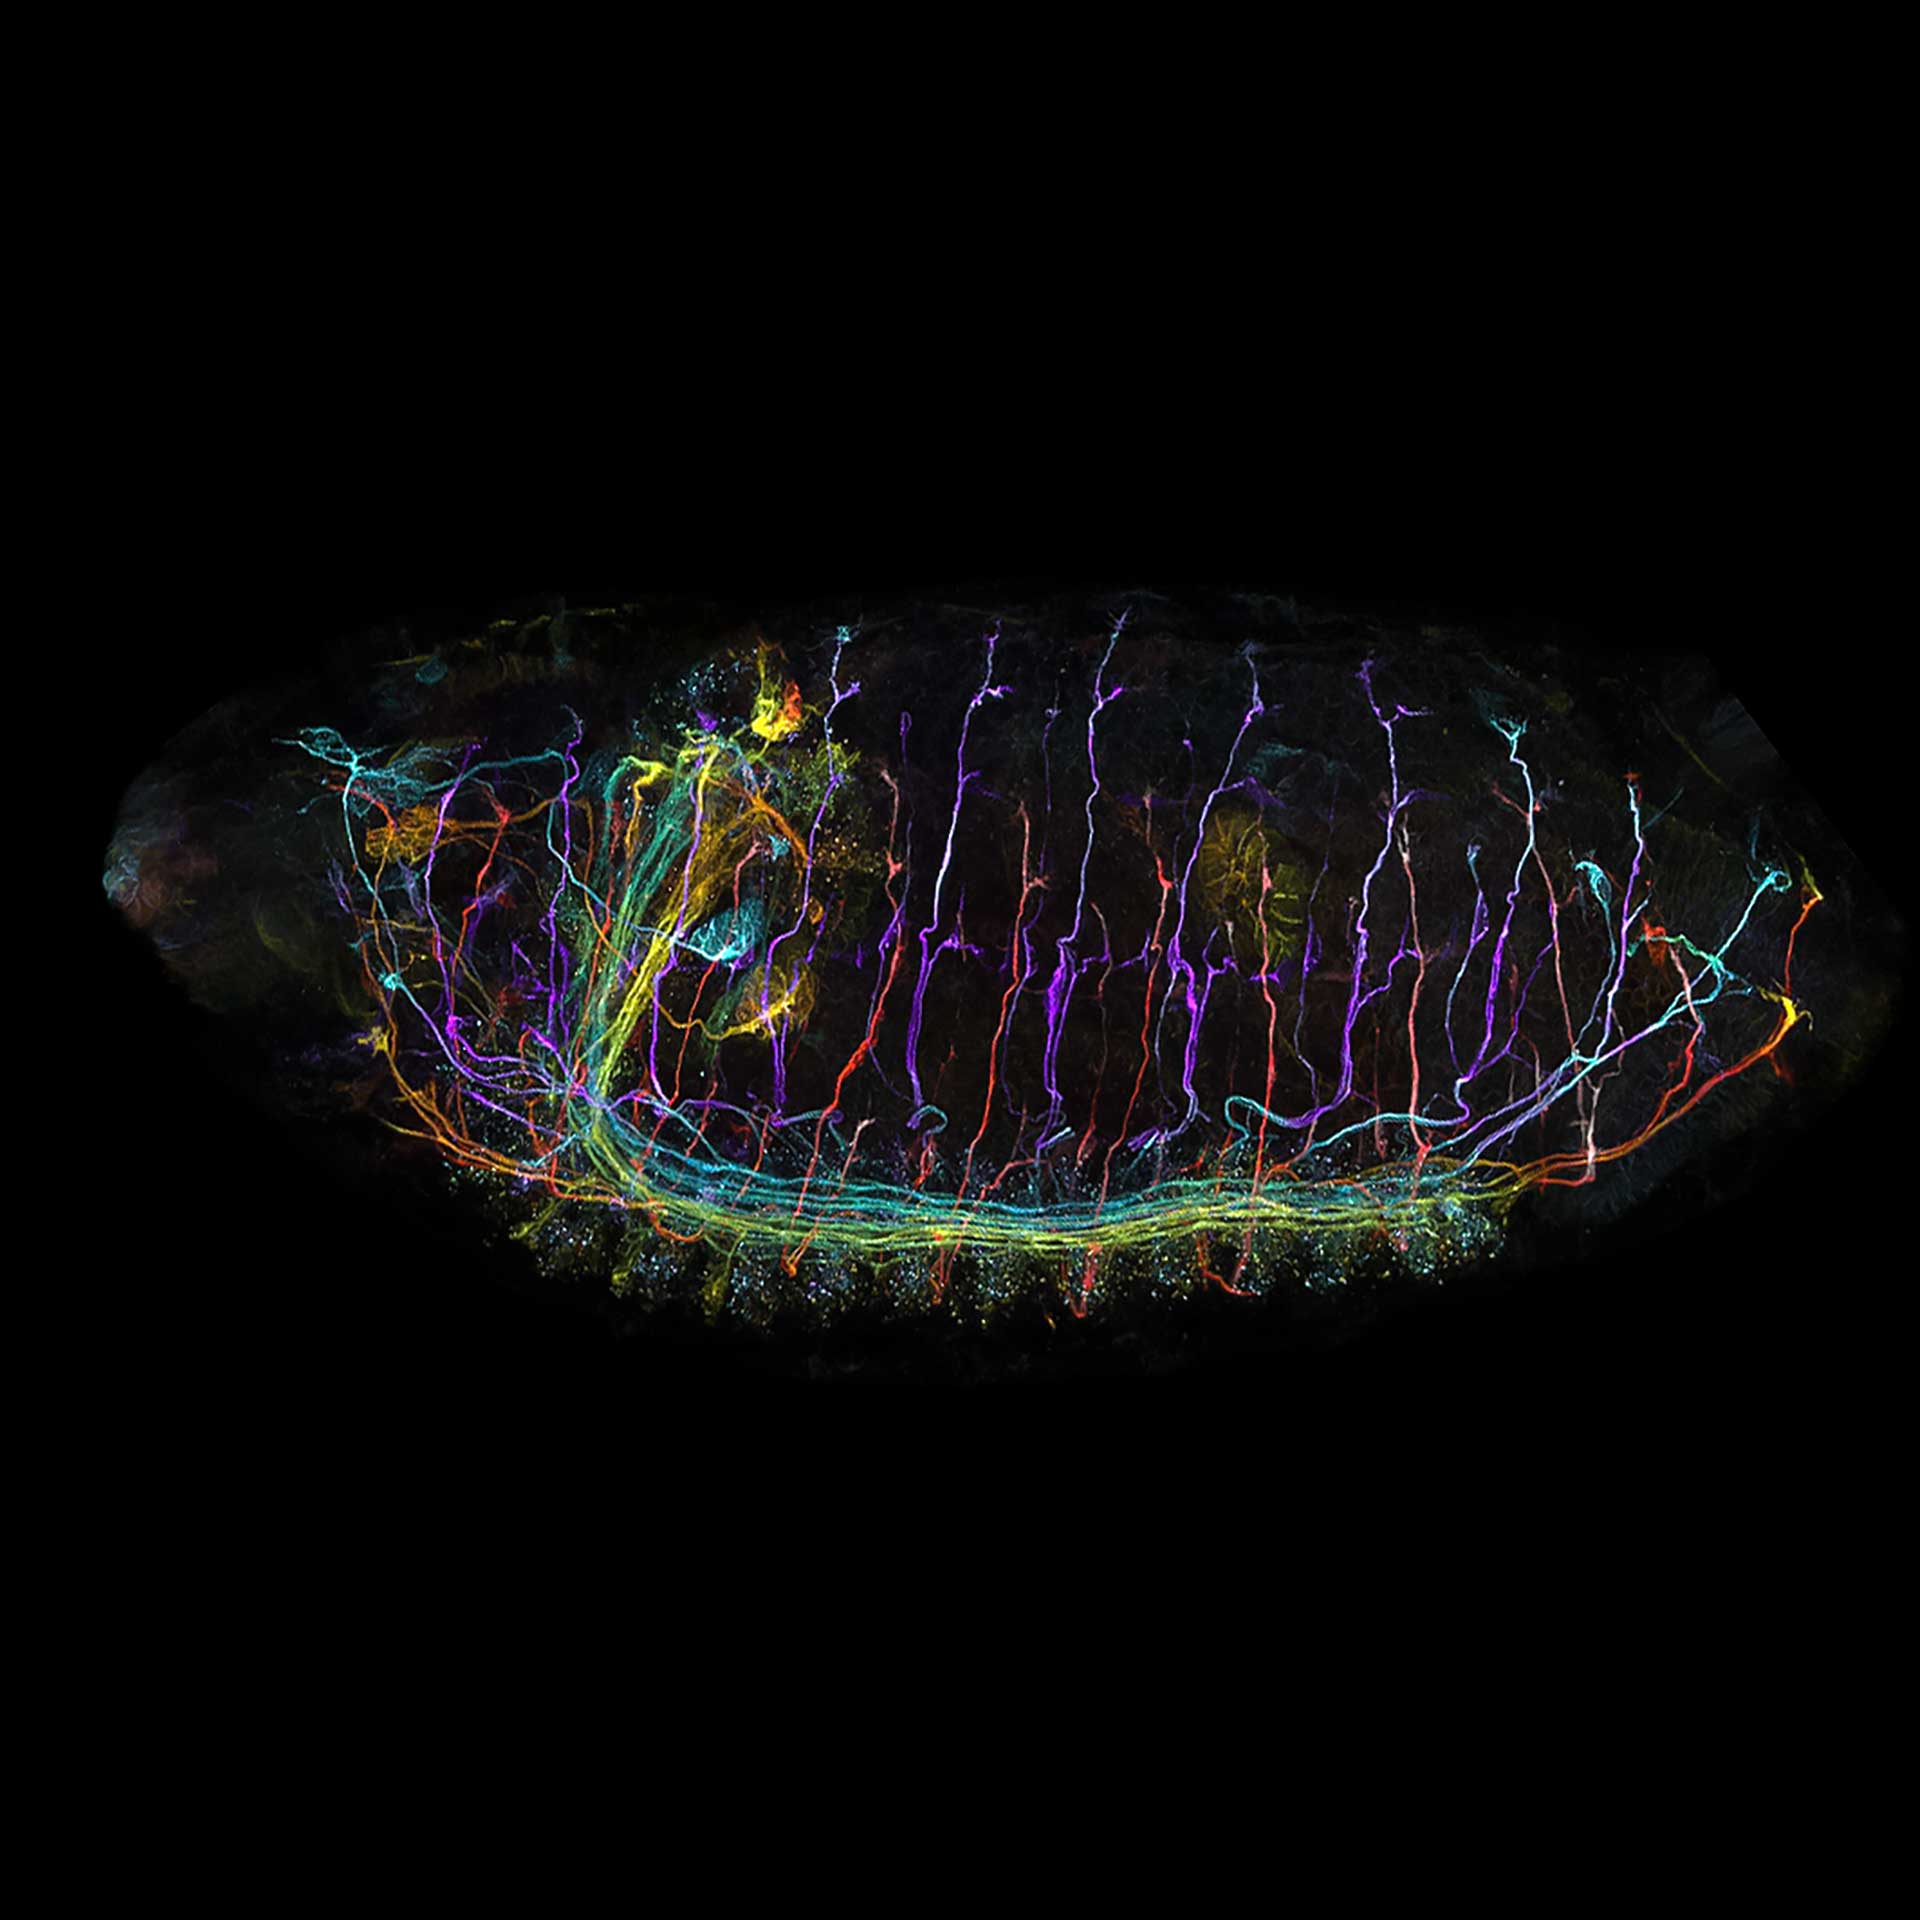 Embryon de drosophile imagé avec le mode Multiplex du détecteur Airyscan. Avec l'aimable autorisation de J. Sellin, LIMES, Allemagne